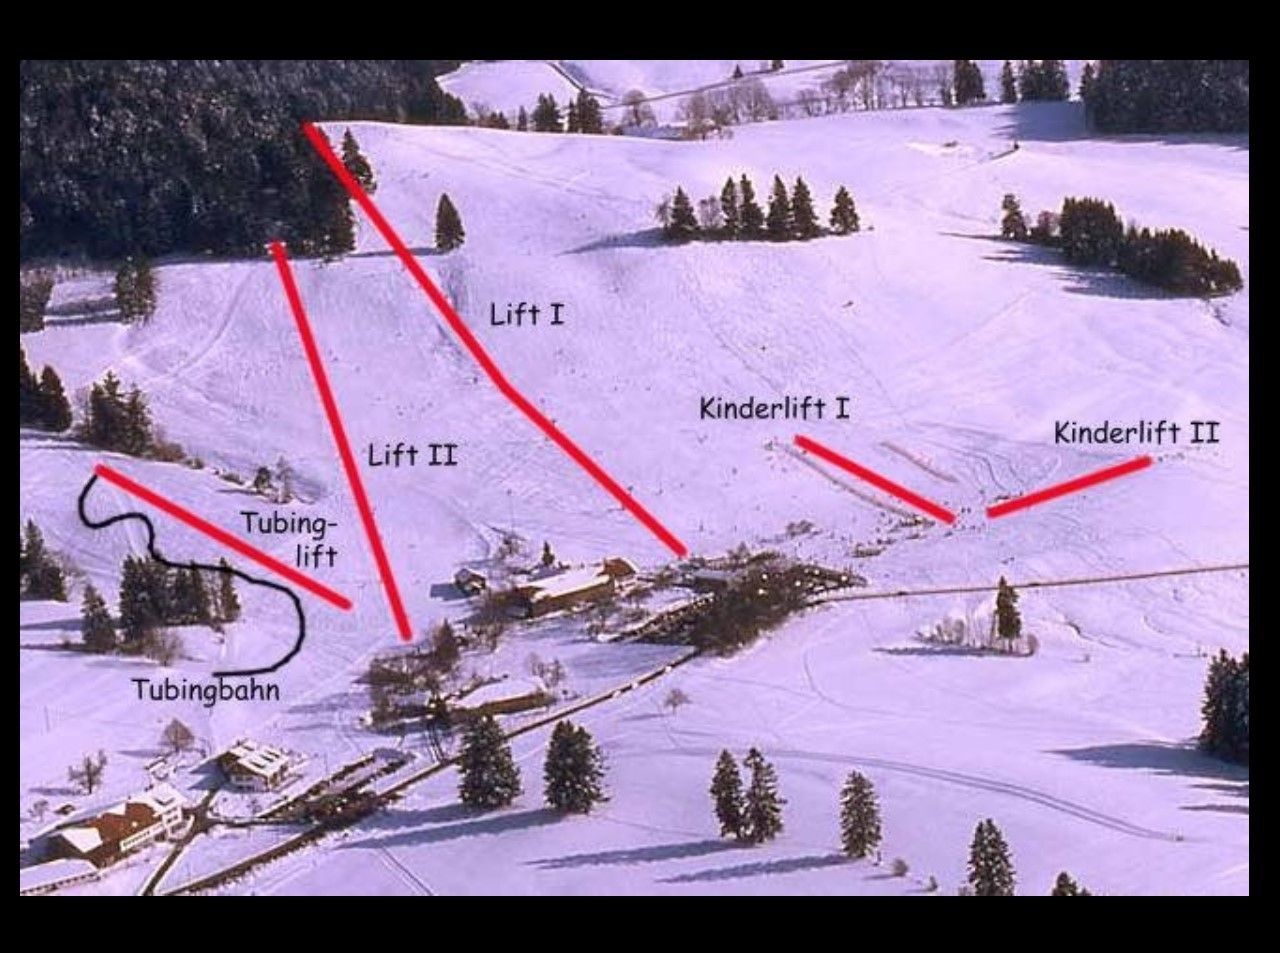 Pistenplan / Karte Skigebiet Hopfen am See, 